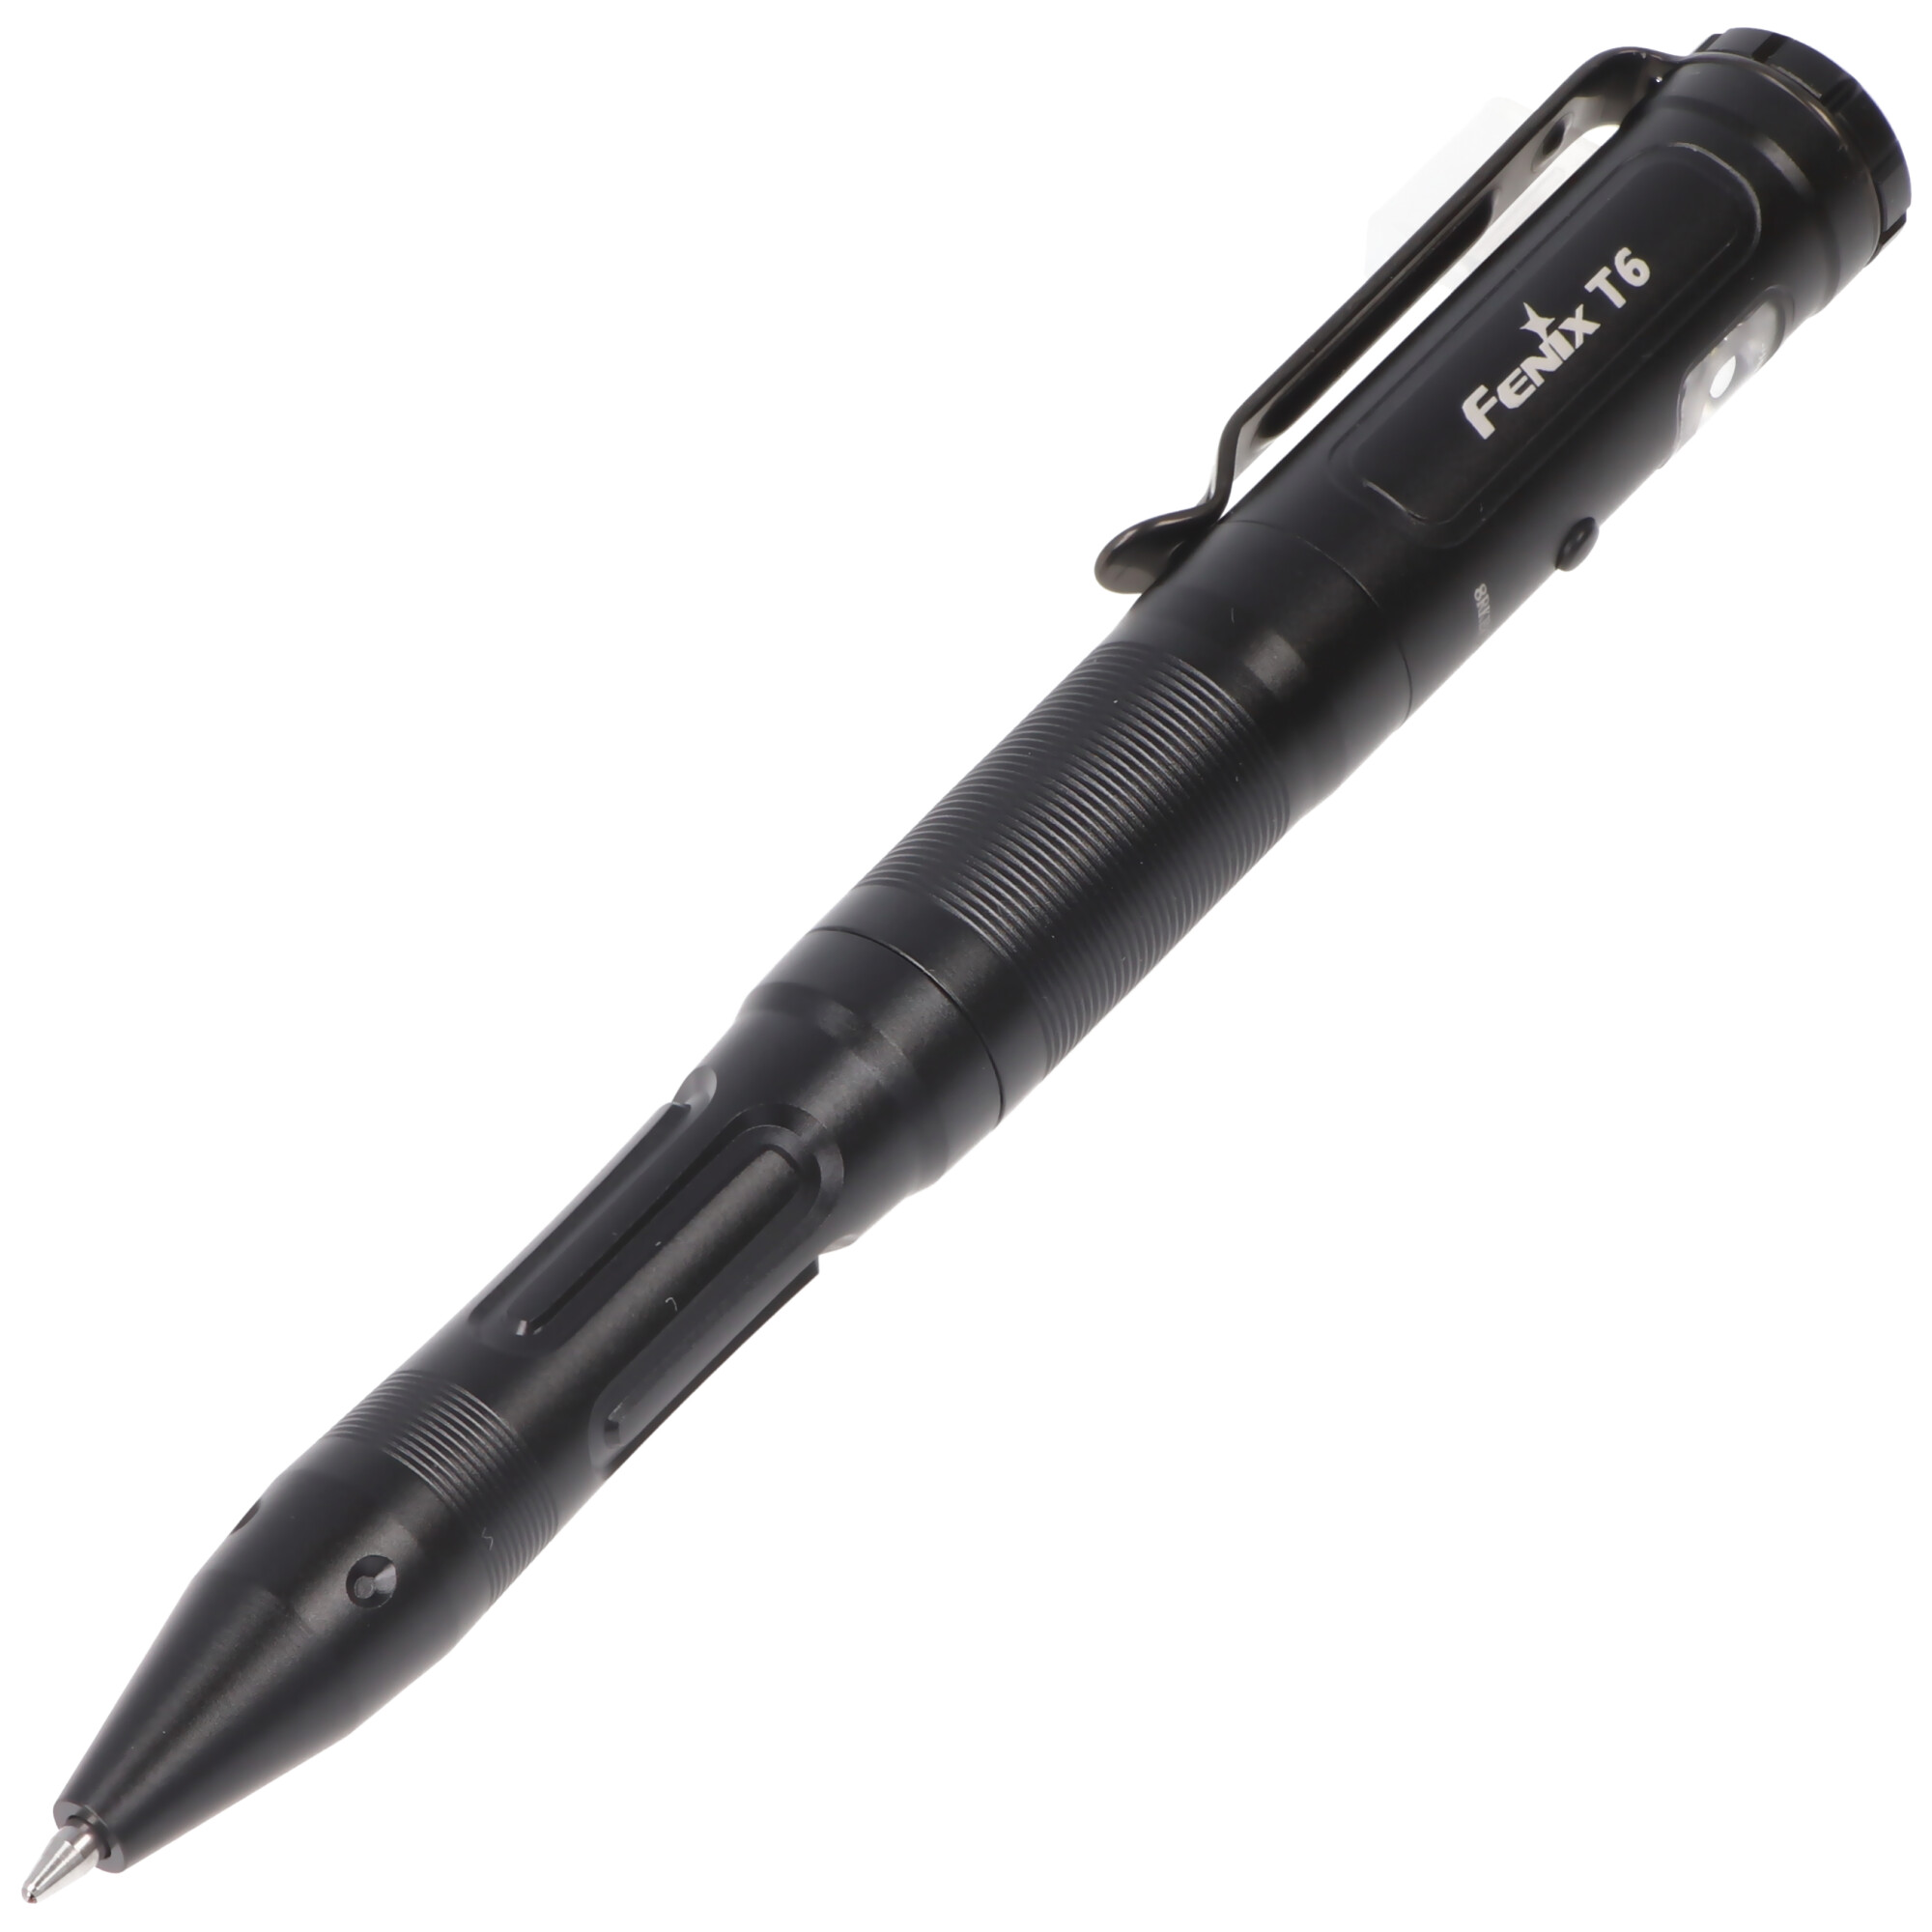 Fenix T6 taktischer Kugelschreiber LED Leuchtstift inklusive Akku und Ladekabel